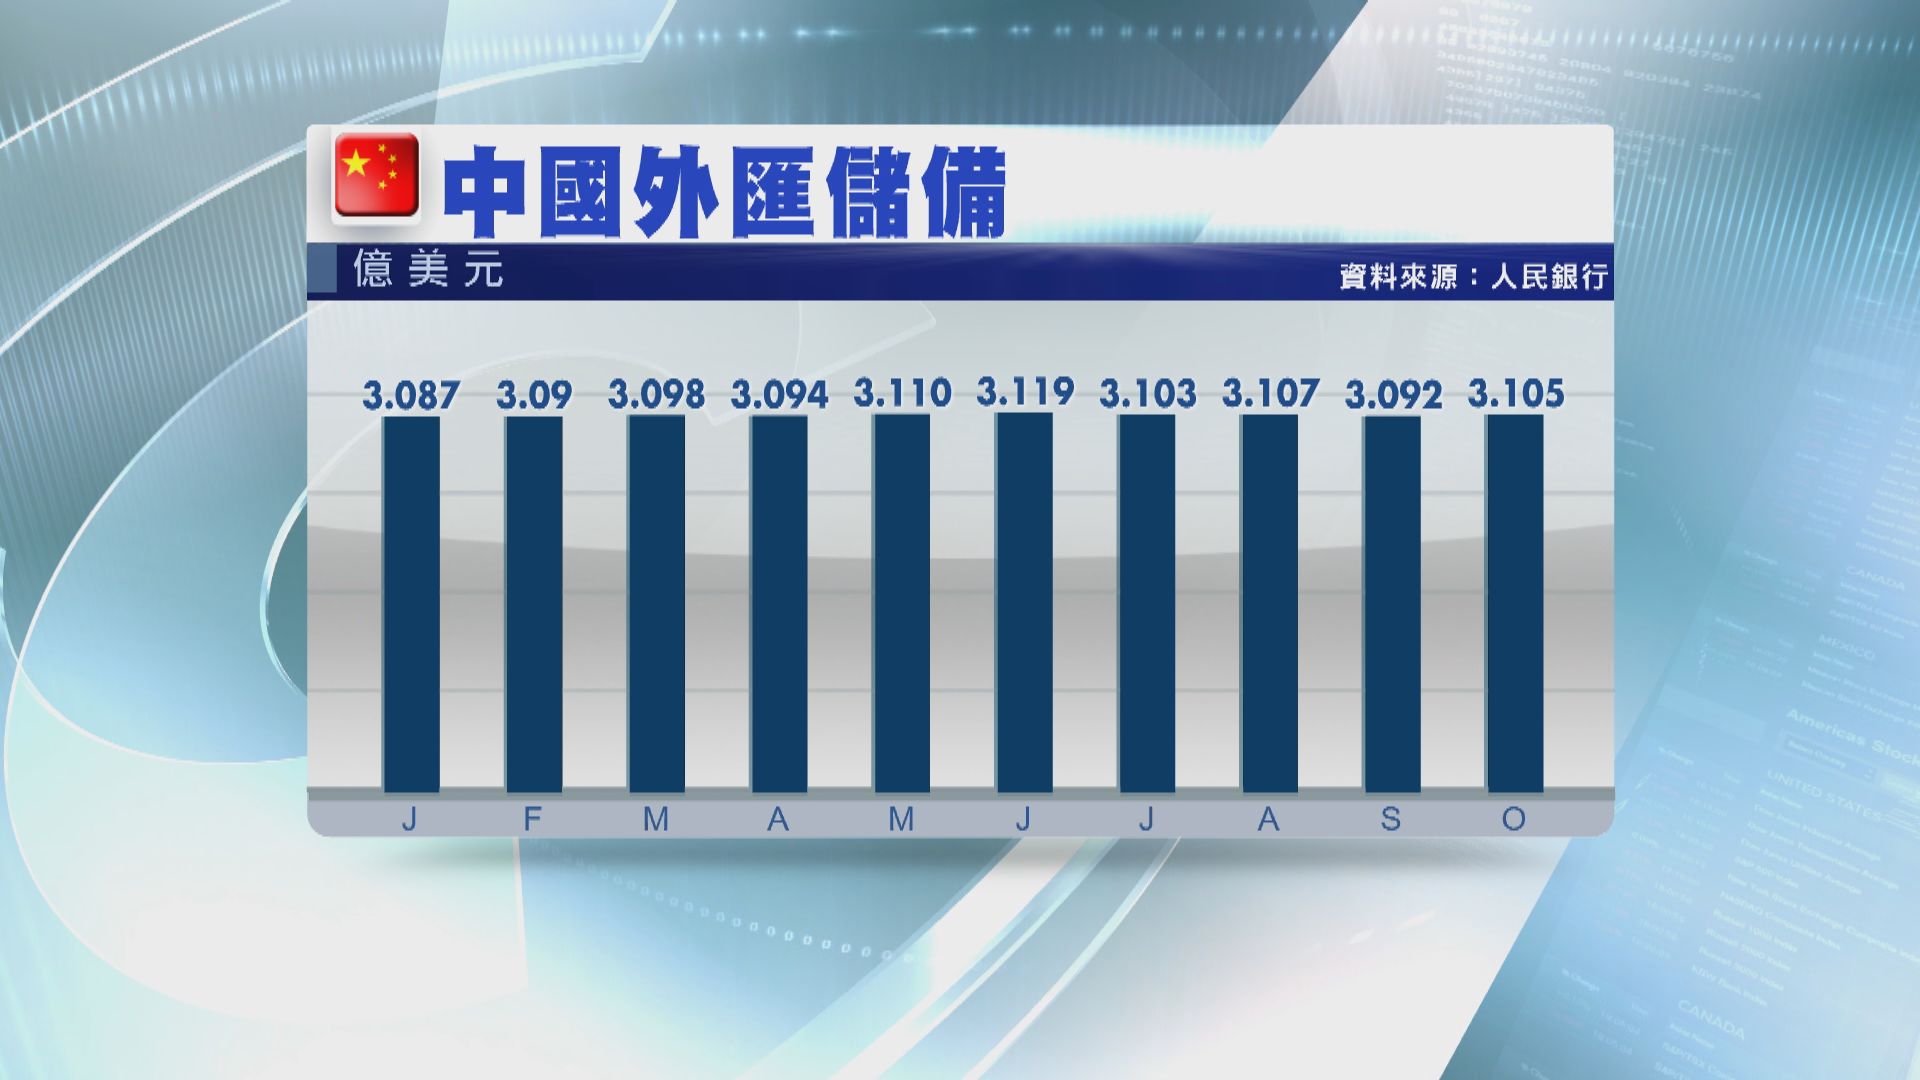 【略高於預期】中國最新外匯儲備較9月底回升127億美元